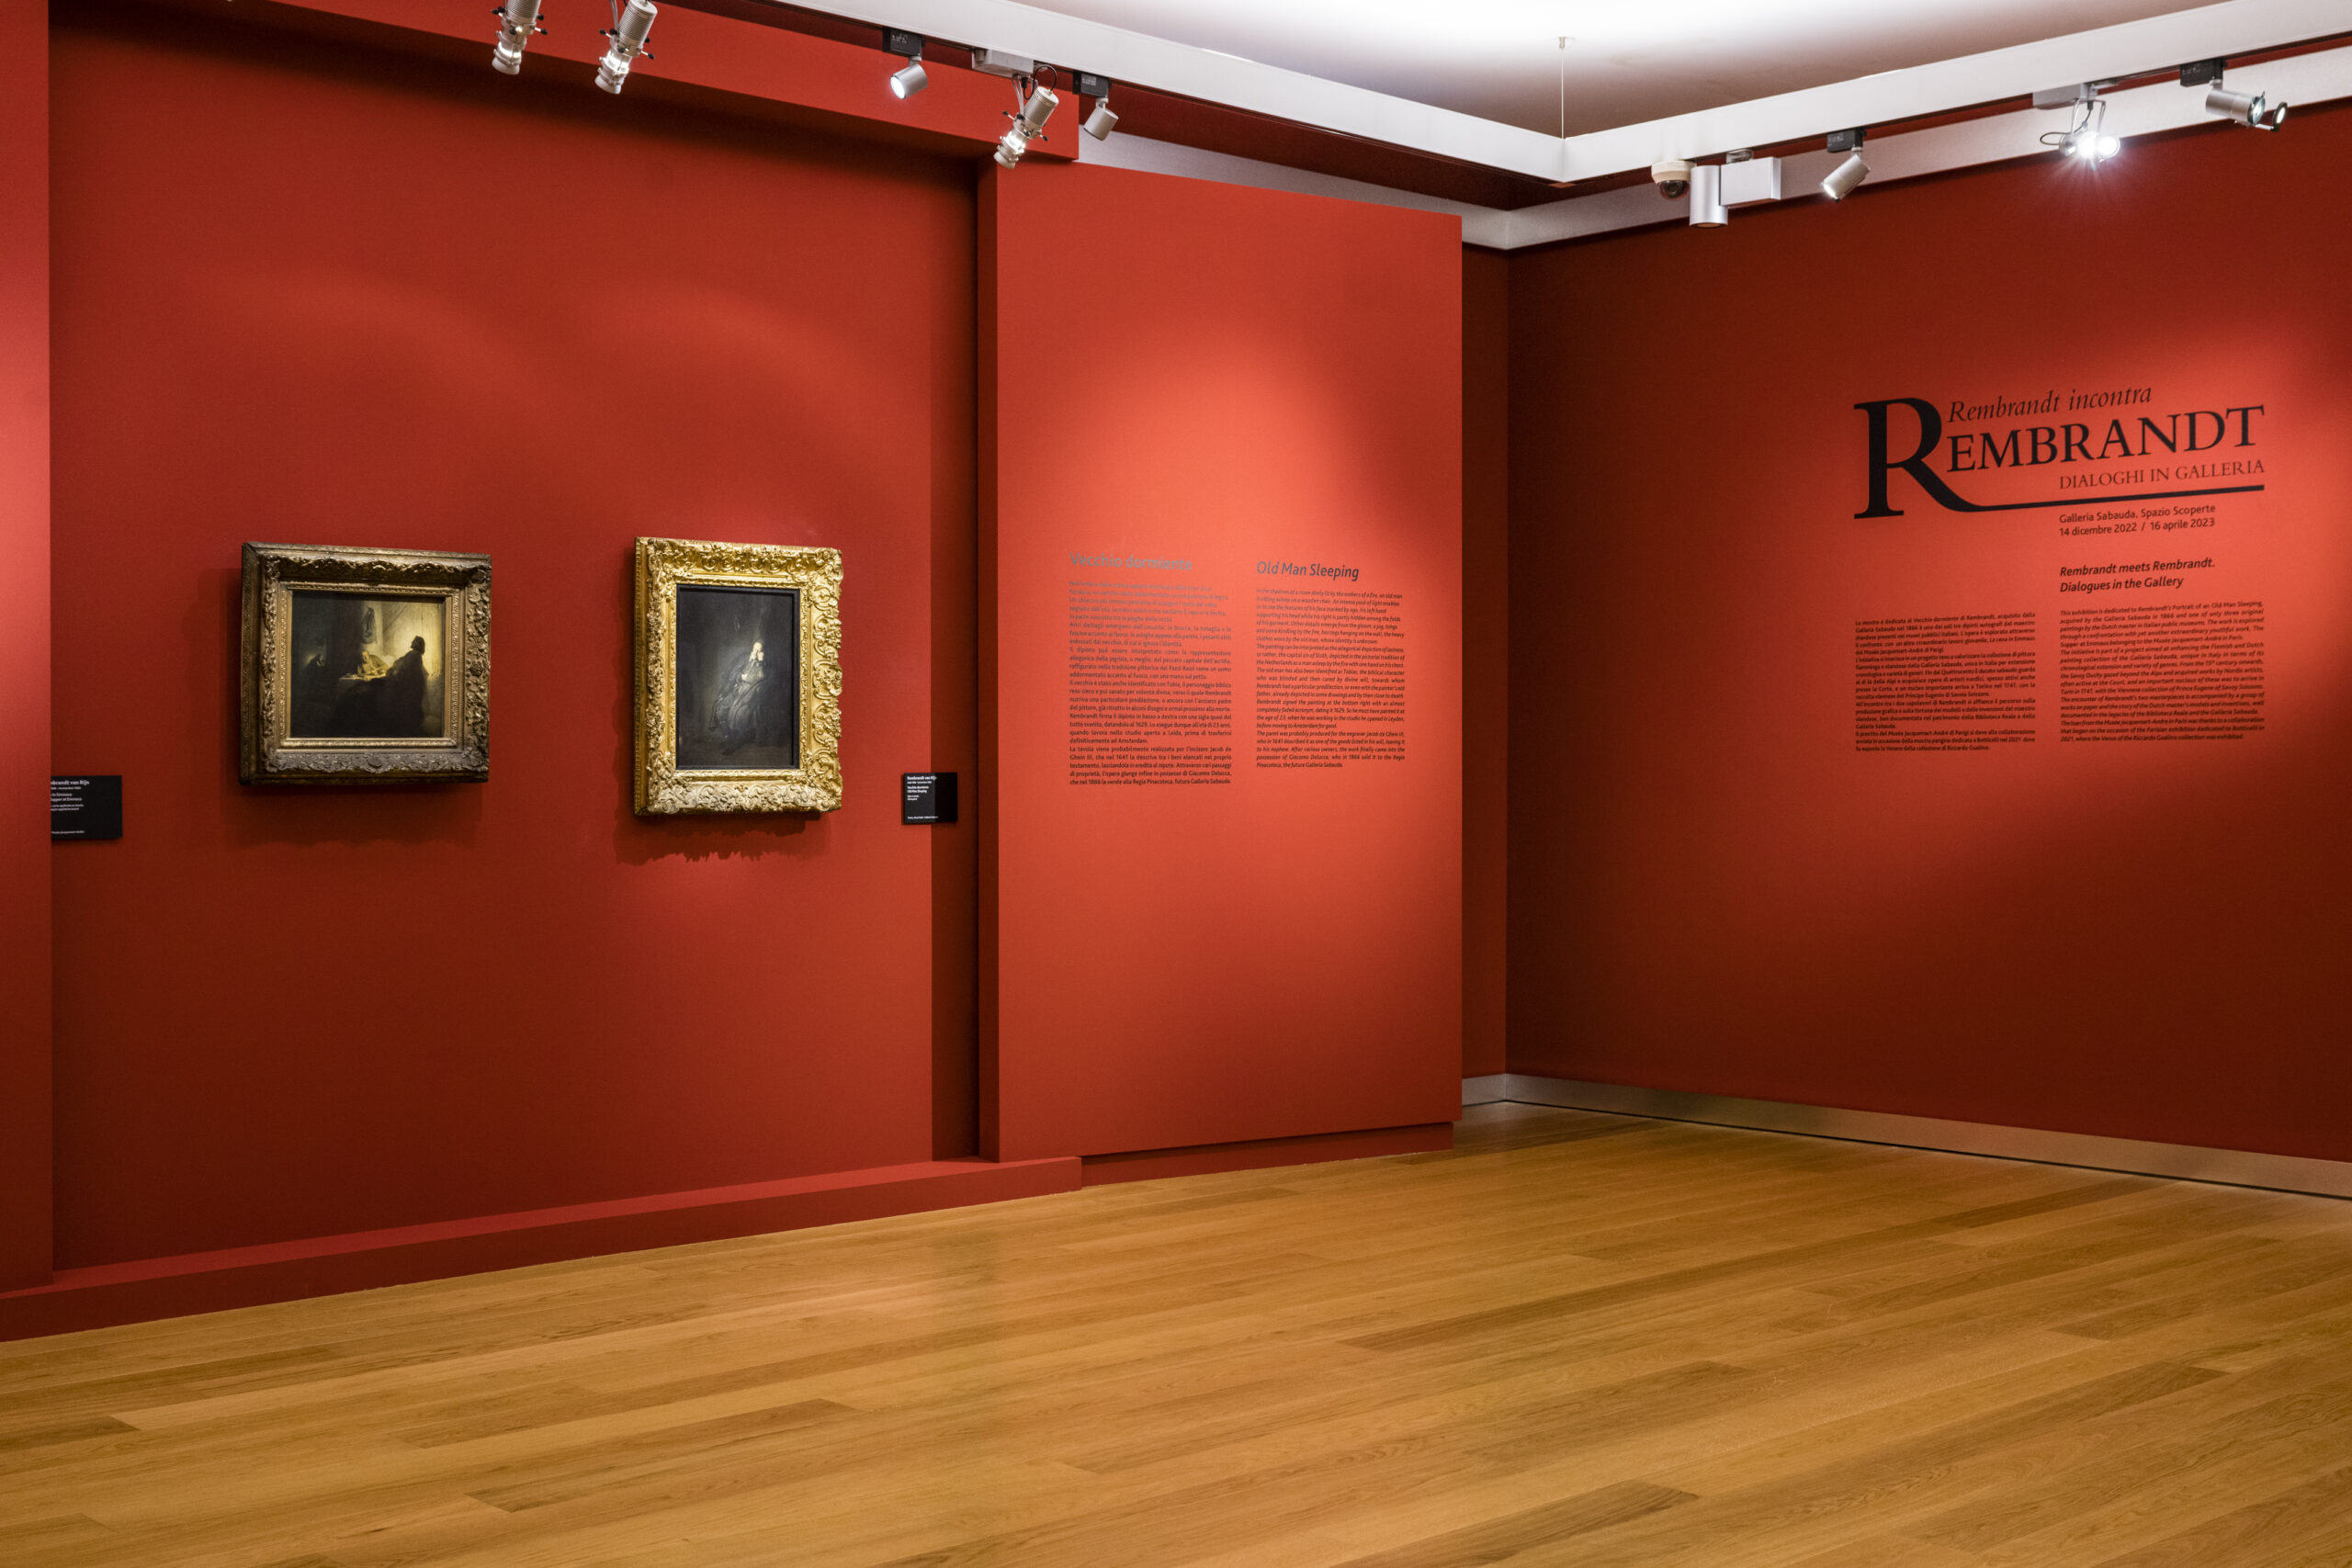 MOSTRA | Rembrandt incontra Rembrandt. Dialoghi in Galleria | Musei Reali, Galleria Sabauda – Spazio Scoperte